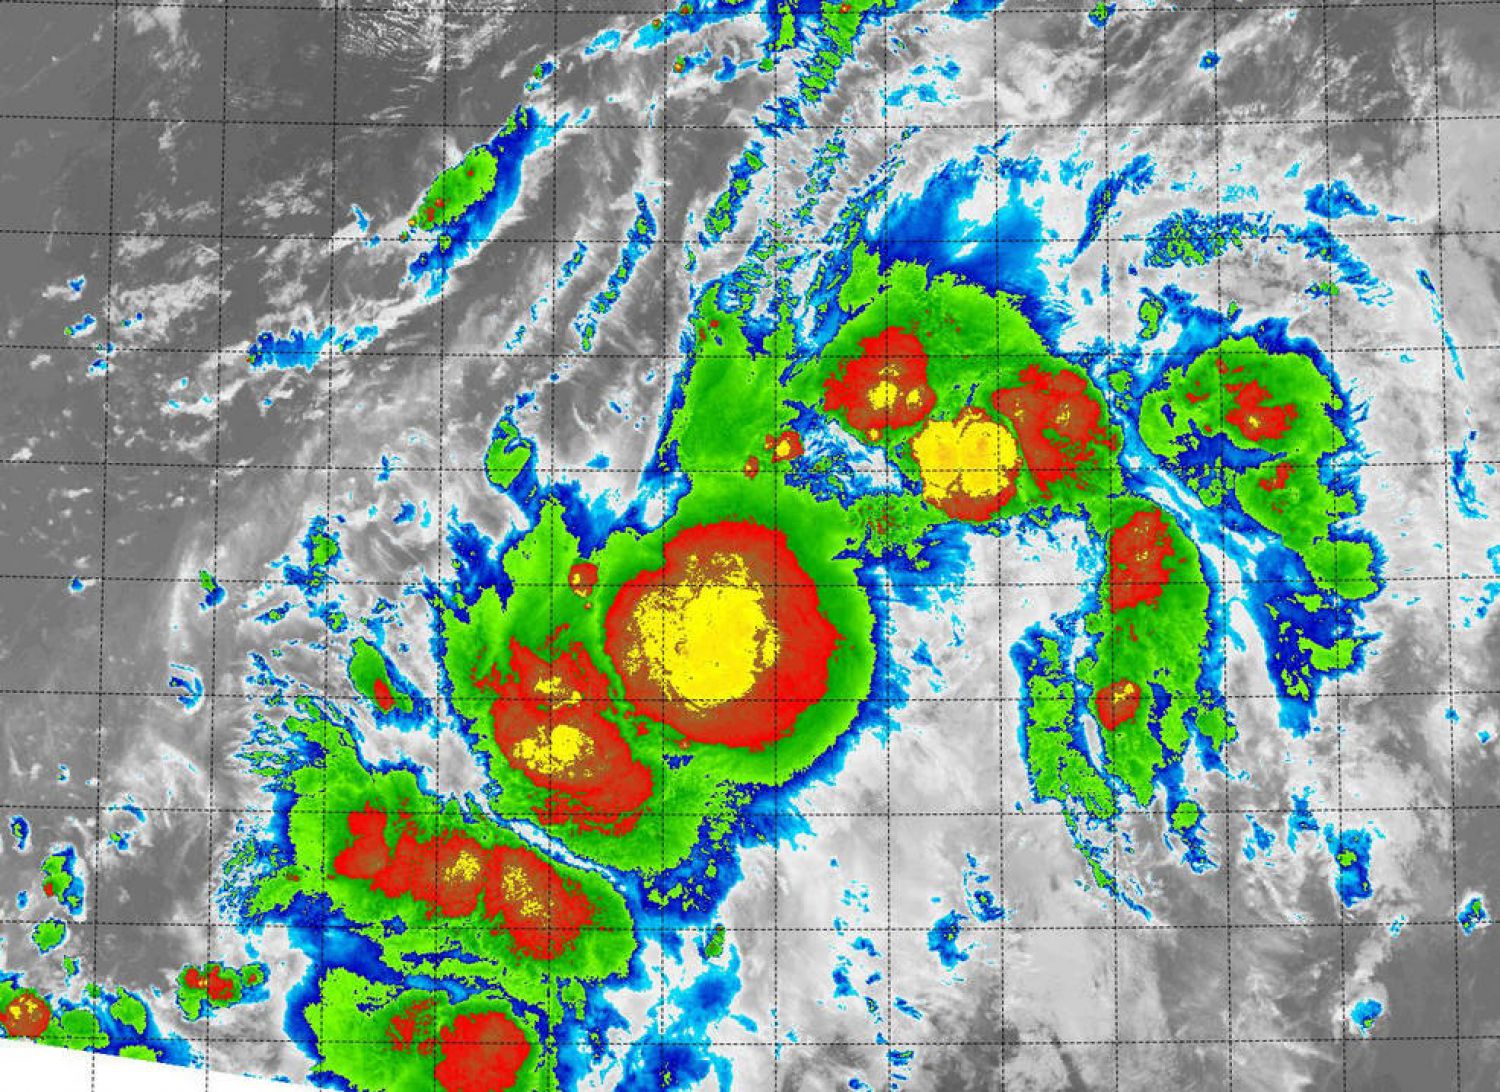 O satélite Suomi NPP da NASA-NOAA vê a depressão tropical 14E desorganizada